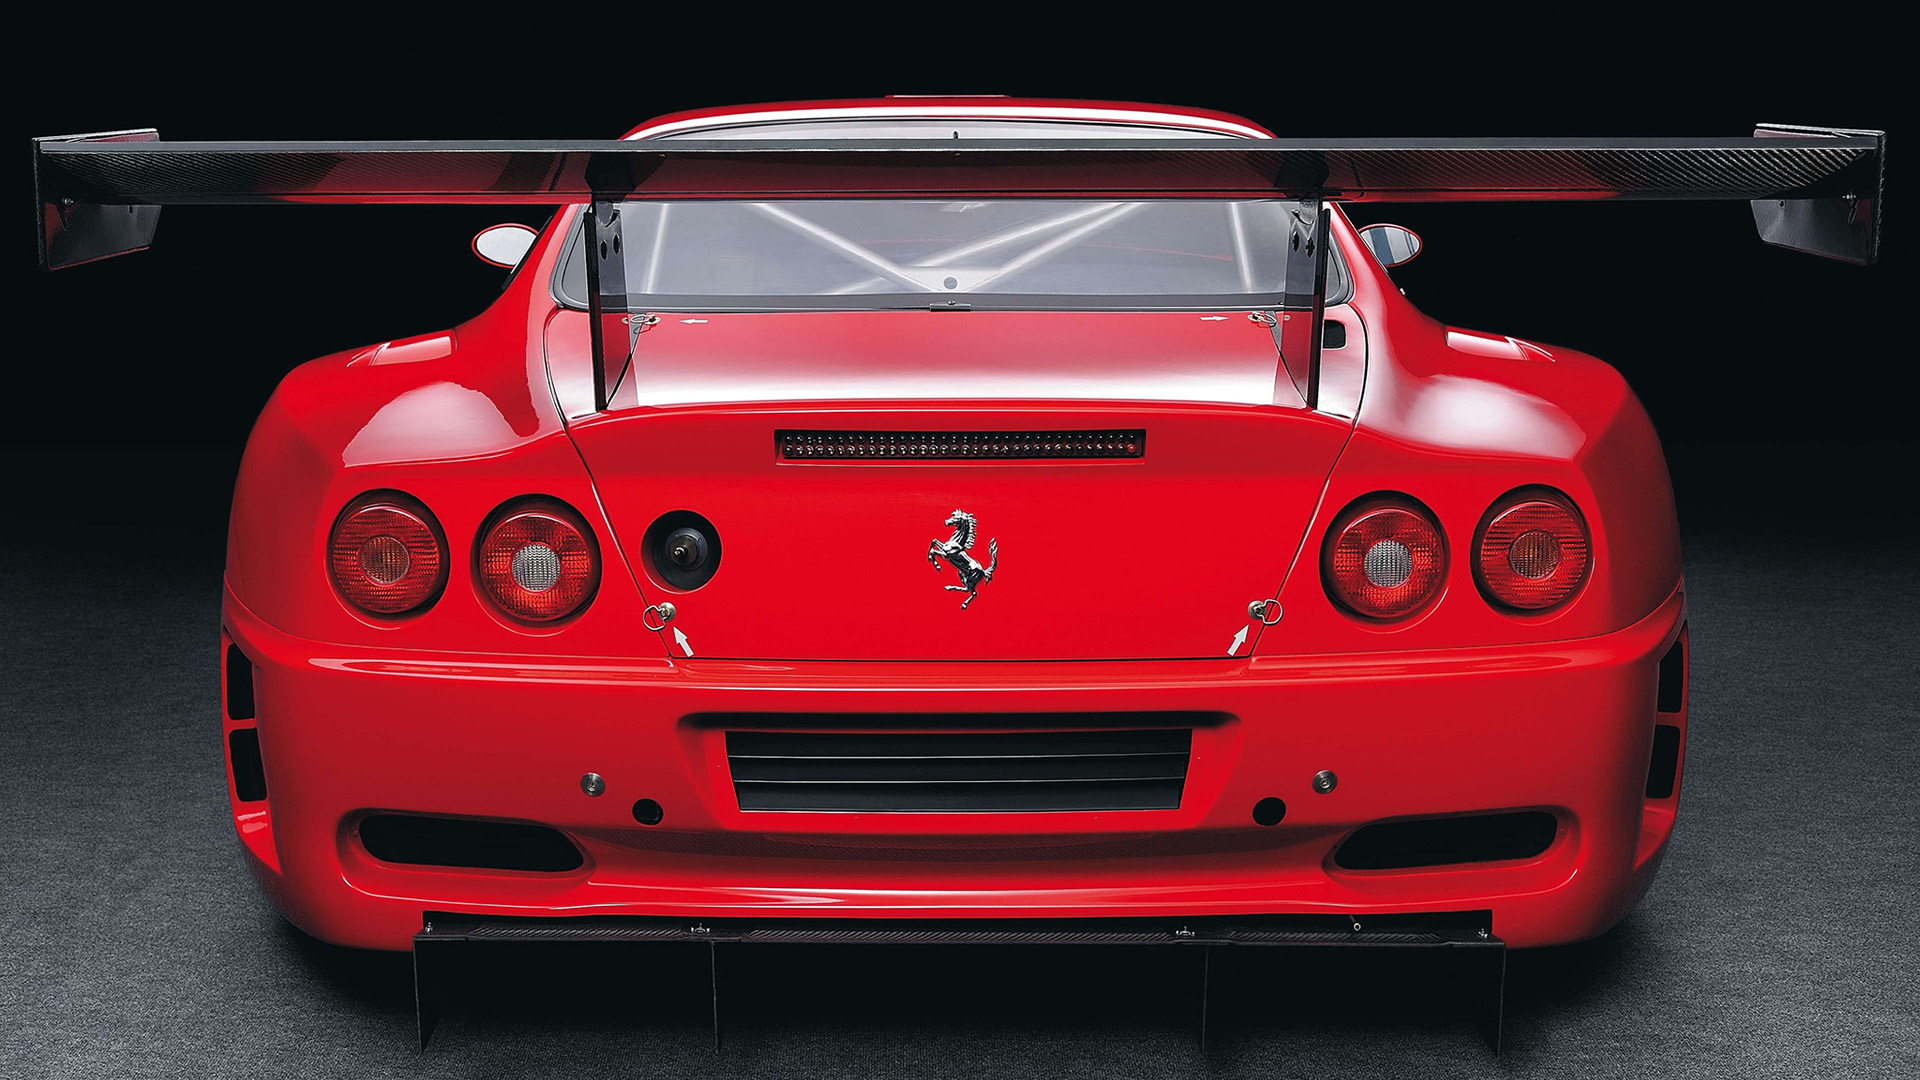  2004 Ferrari 575 GTC Wallpaper.